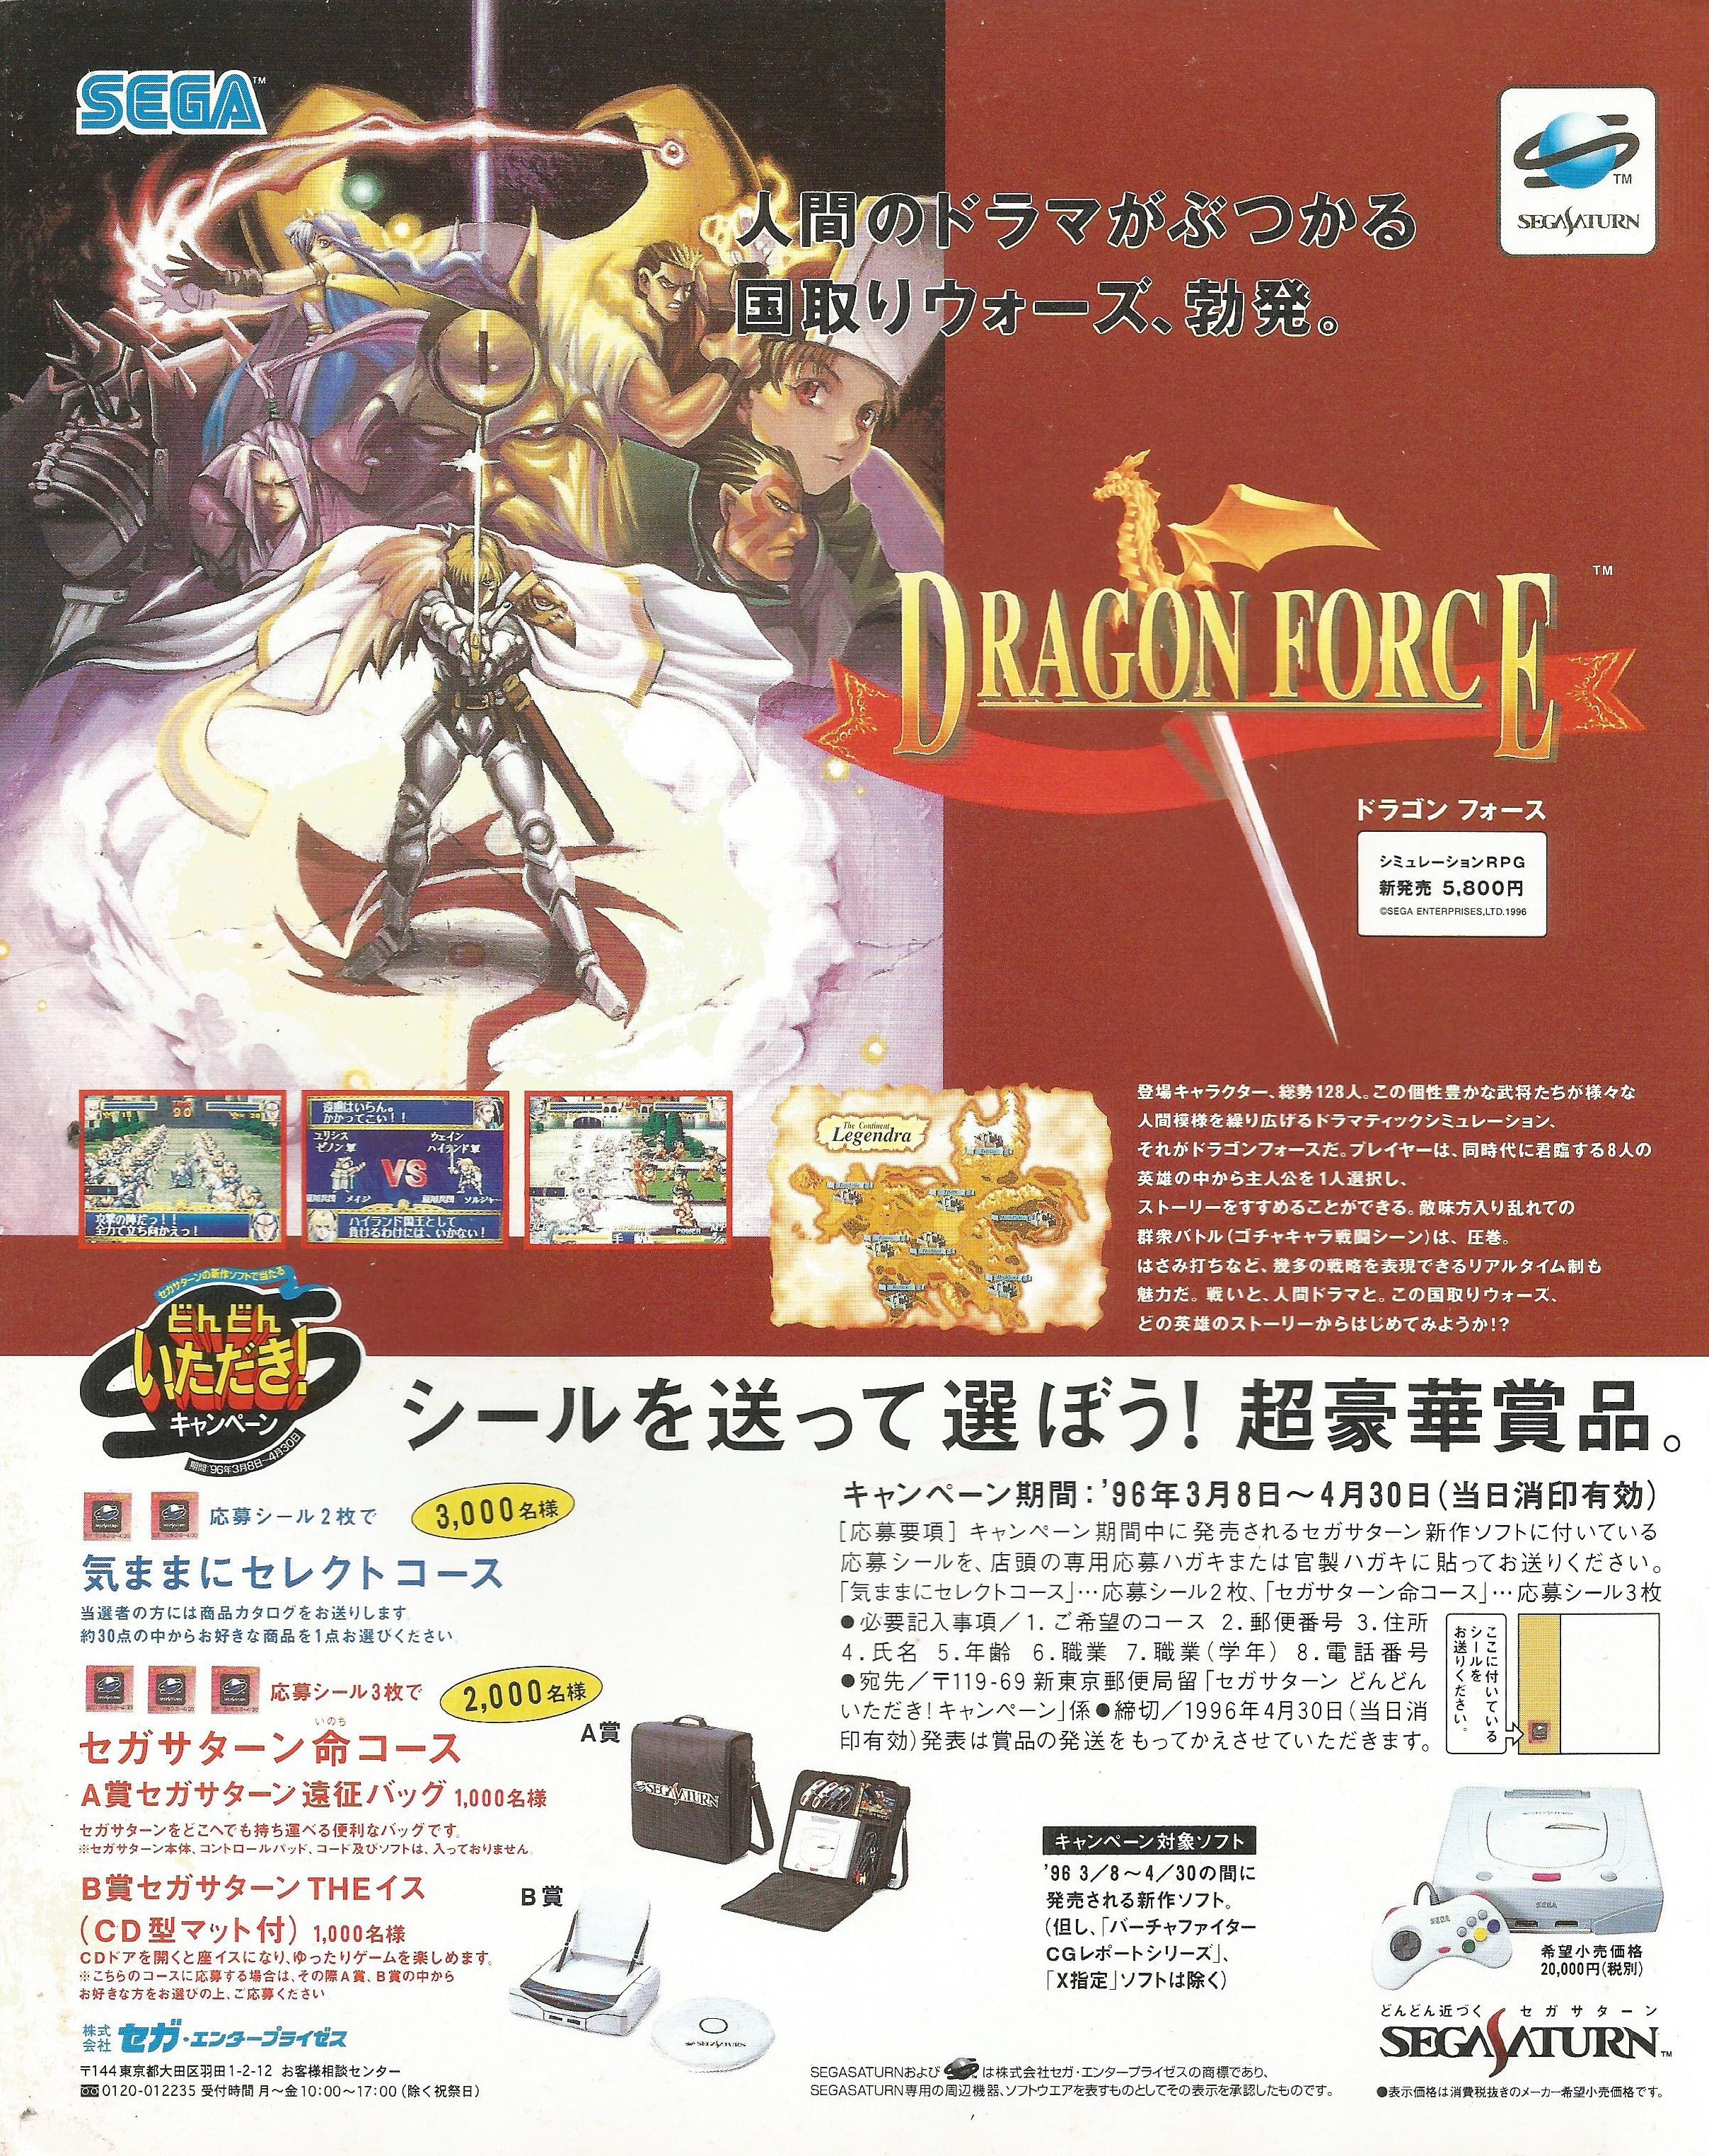 DragonForce Saturn JP PrintAdvert.jpg